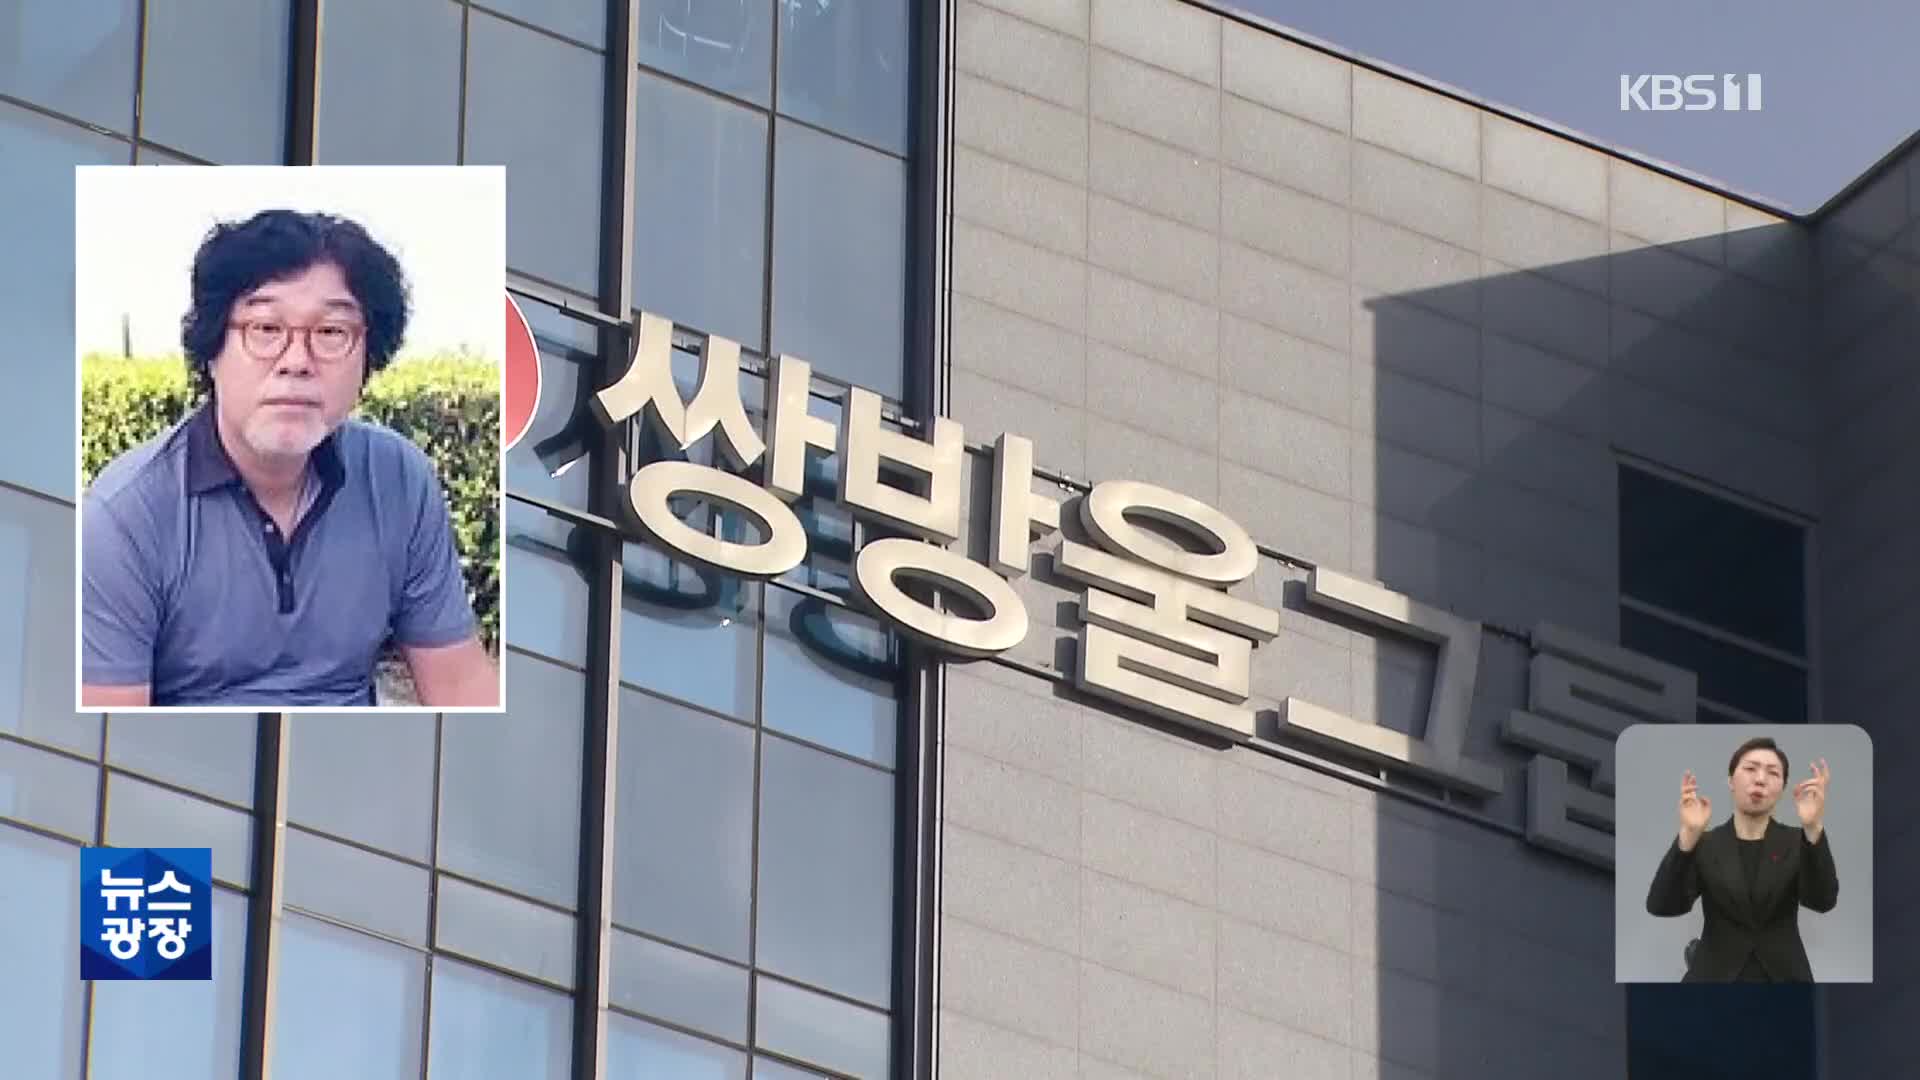 김성태, “검찰 압박 때문에 한국행 결심…북 건네진 돈, 개인돈”